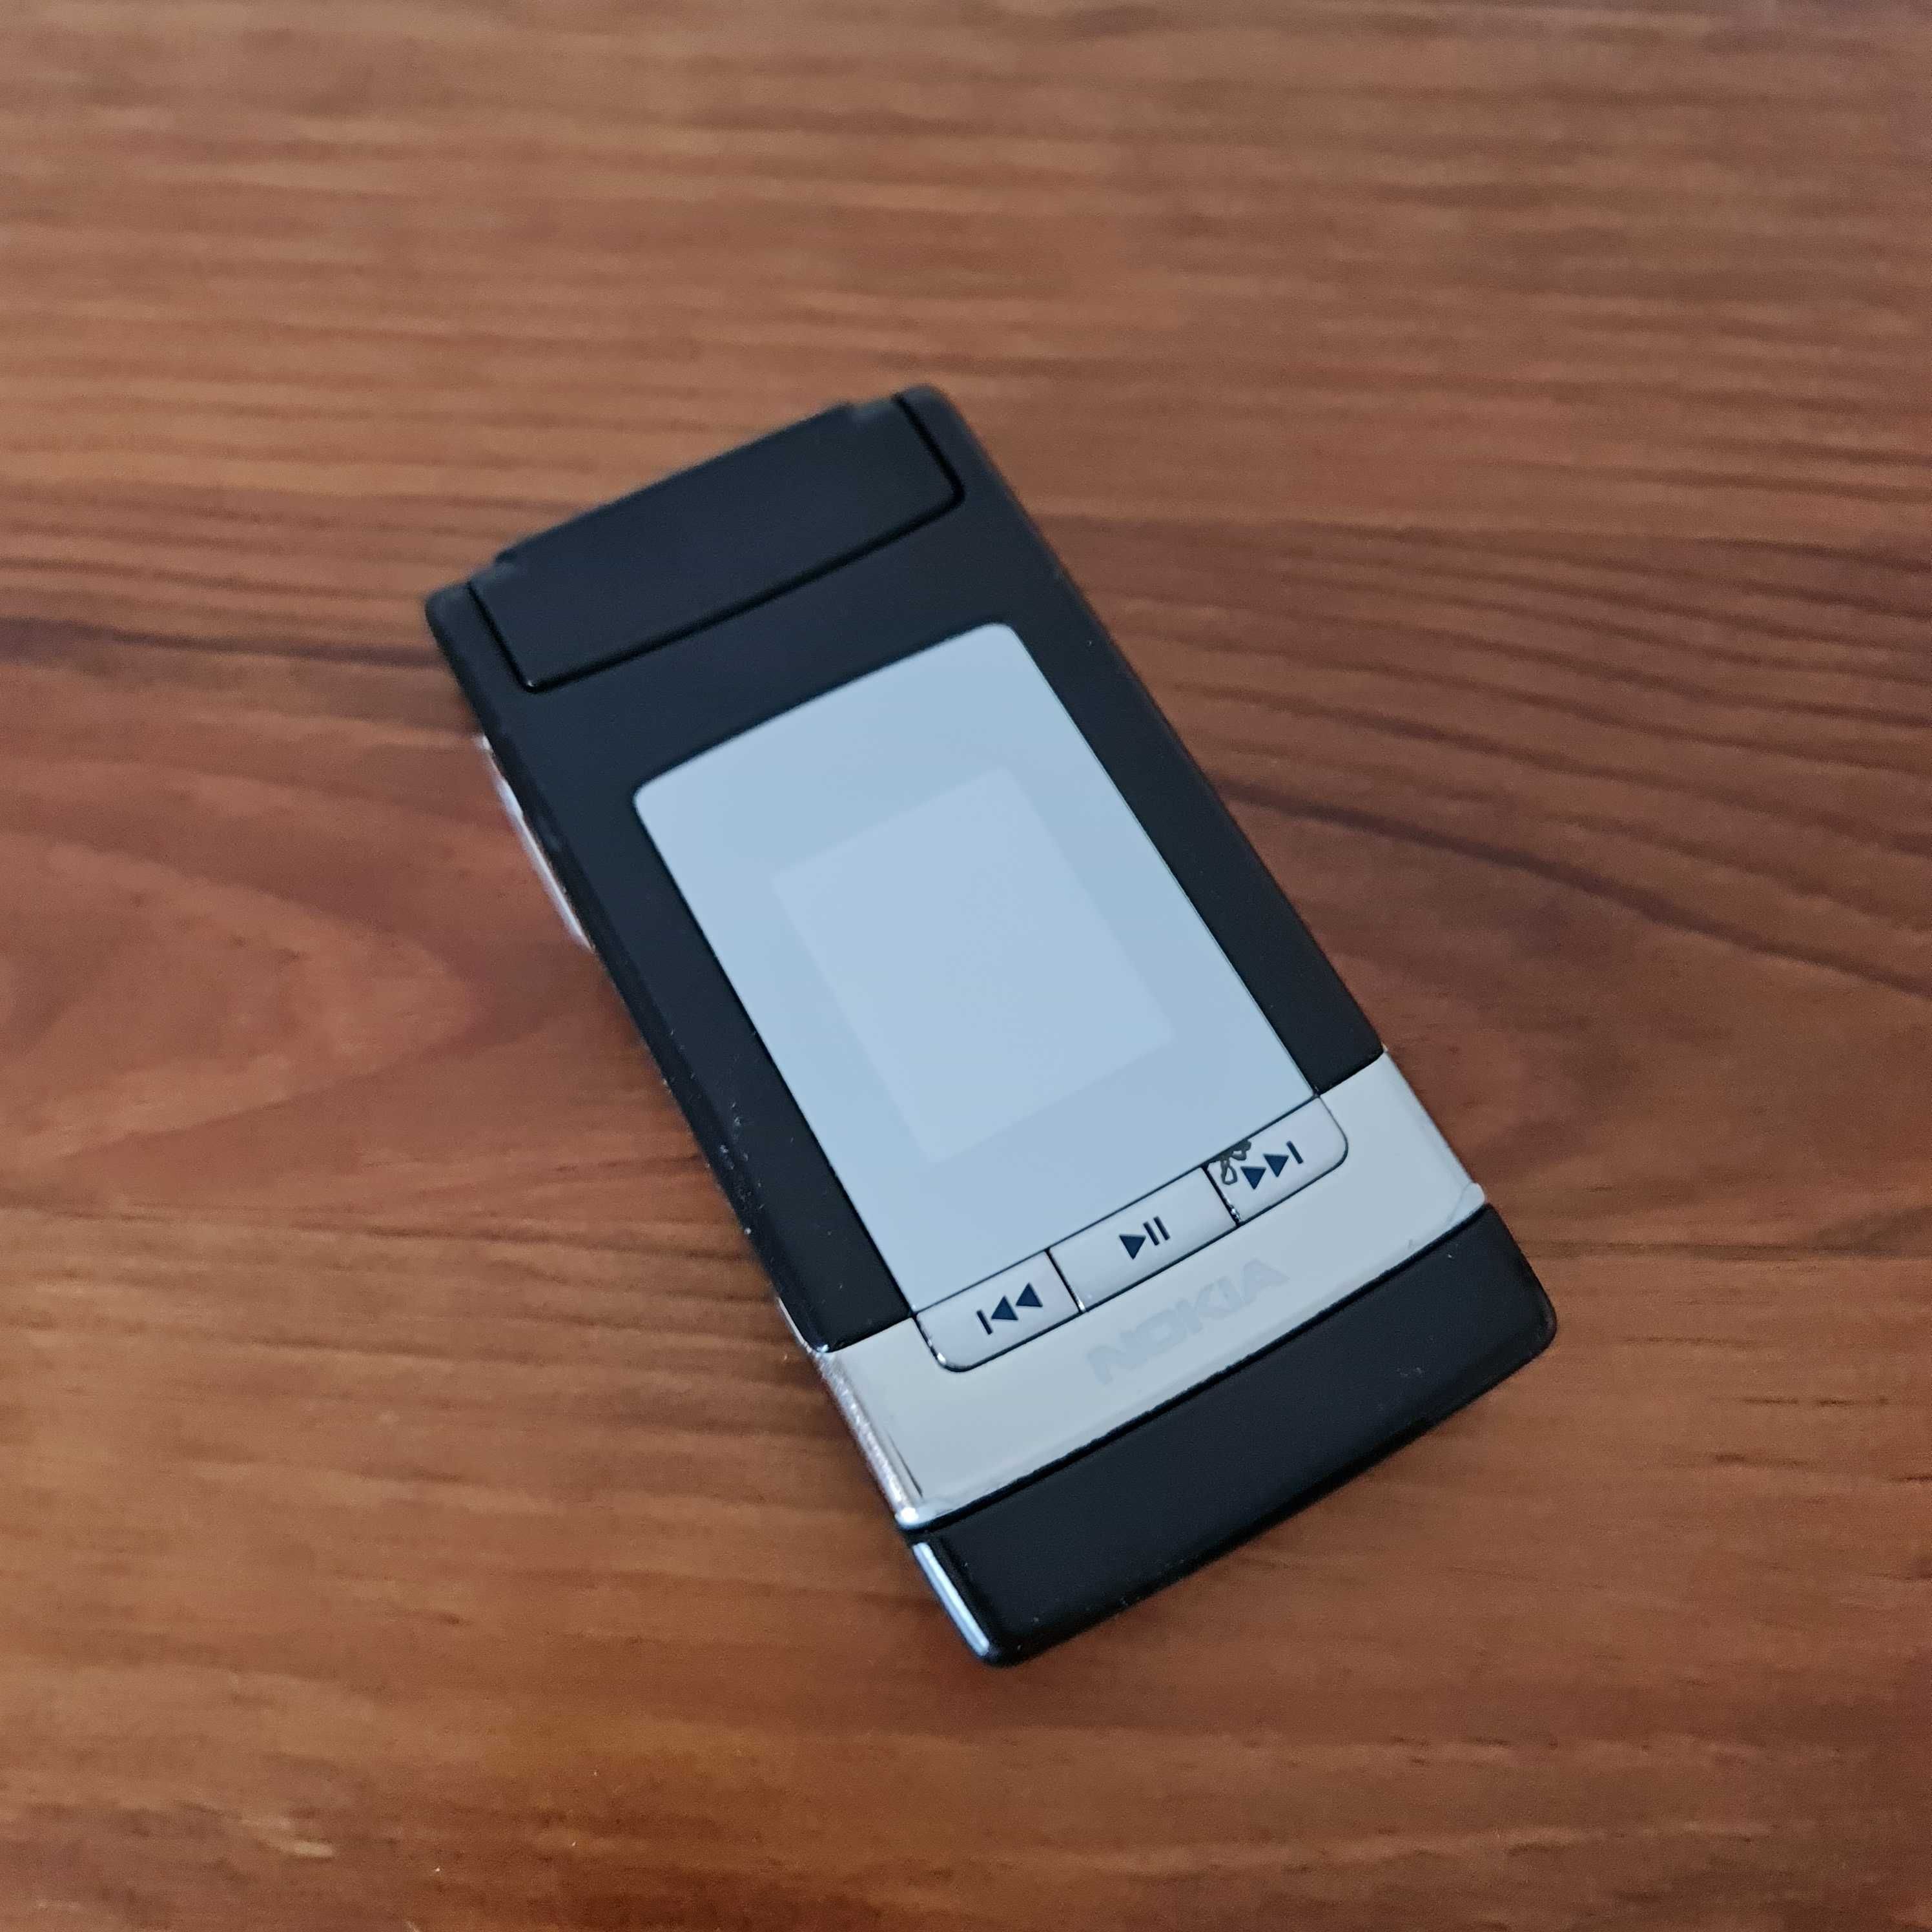 Nokia N76 RARO! completo com acessórios e caixa original!